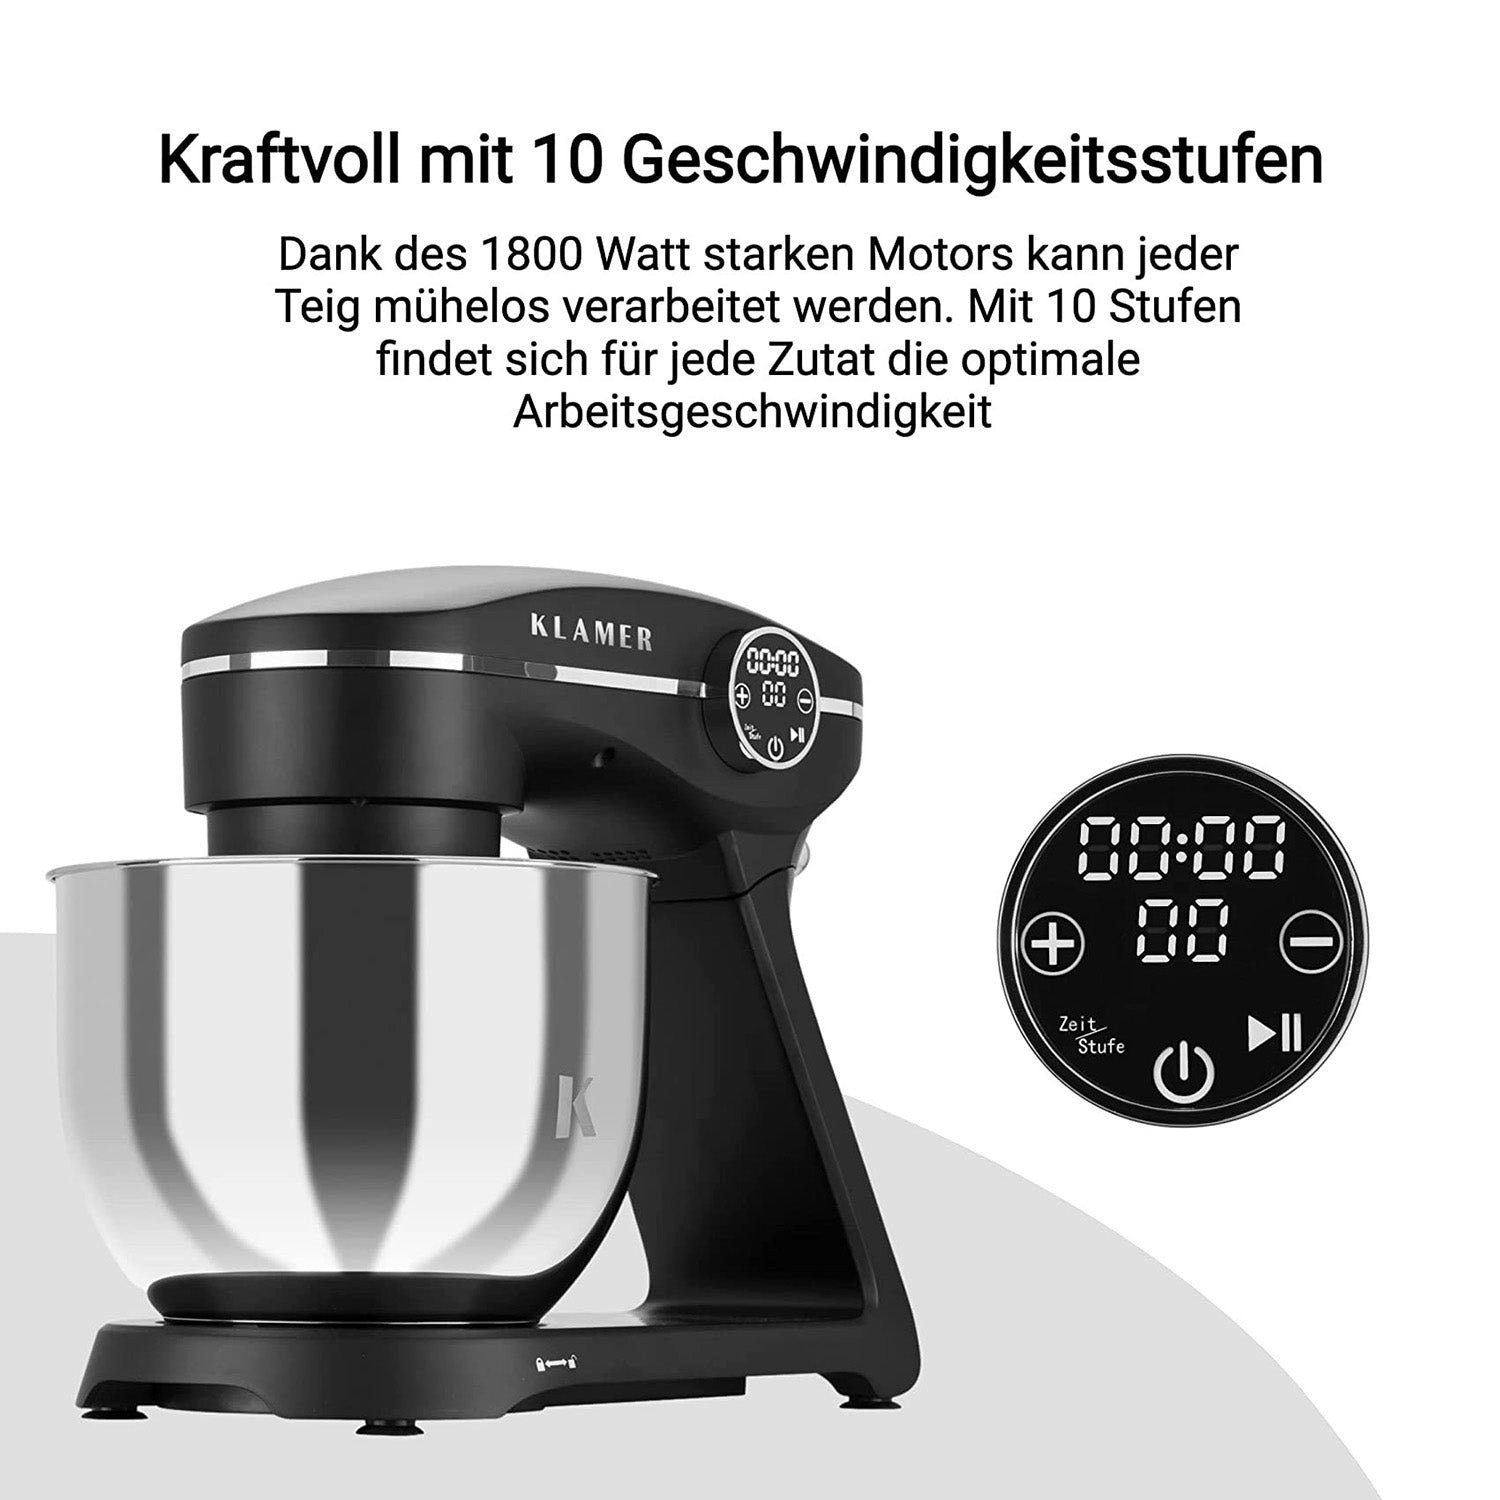 Edelstahl Küchenmaschine 6 1800W, KLAMER Knetmaschine mit Schüs… KLAMER Küchenmaschine Liter